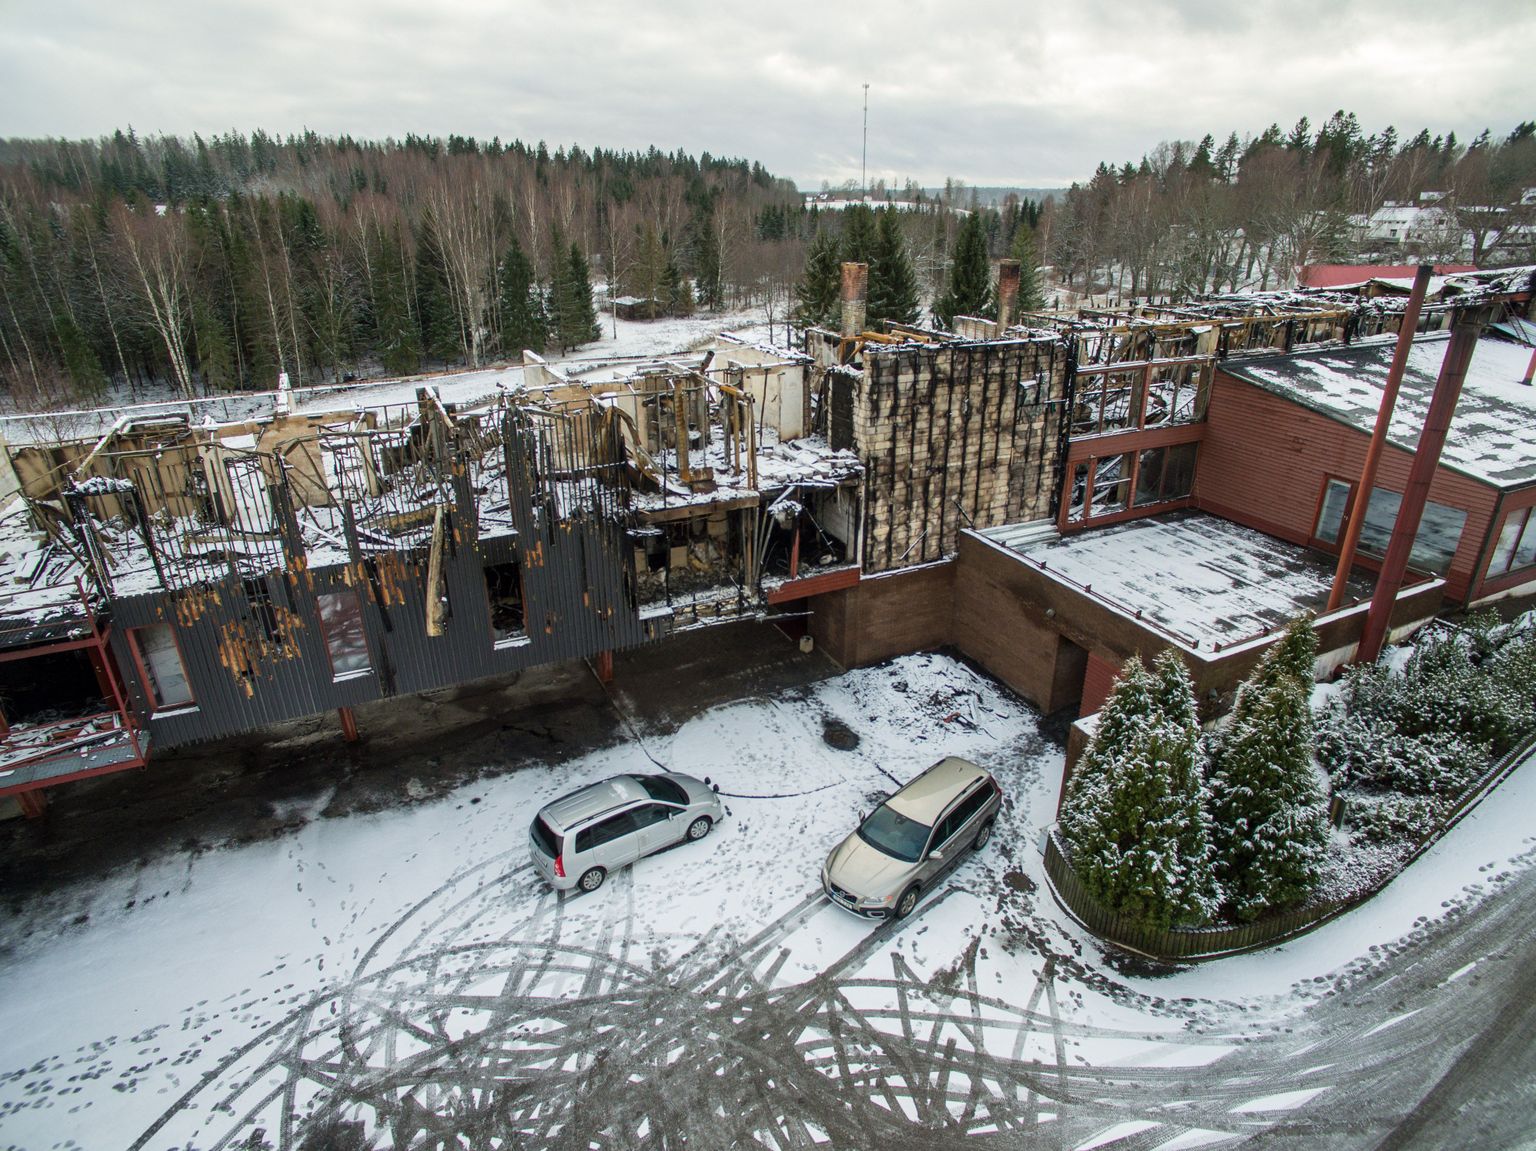 Jaanuari lõpus tules hävinud Bernhardi hotell vahetult pärast tulekahjut.